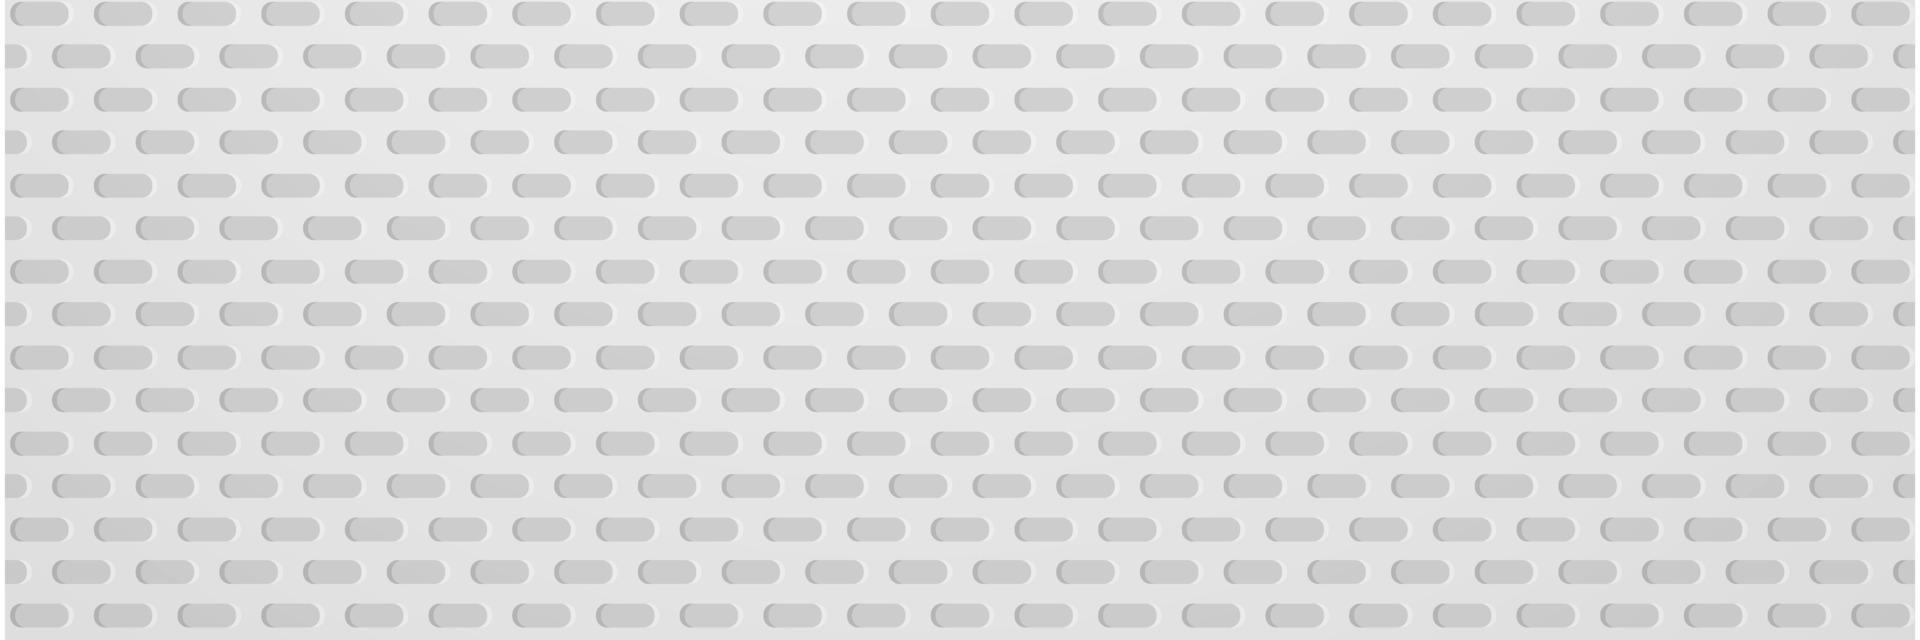 banner astratto geometrico bianco e grigio colore sfondo illustrazione vettoriale. vettore